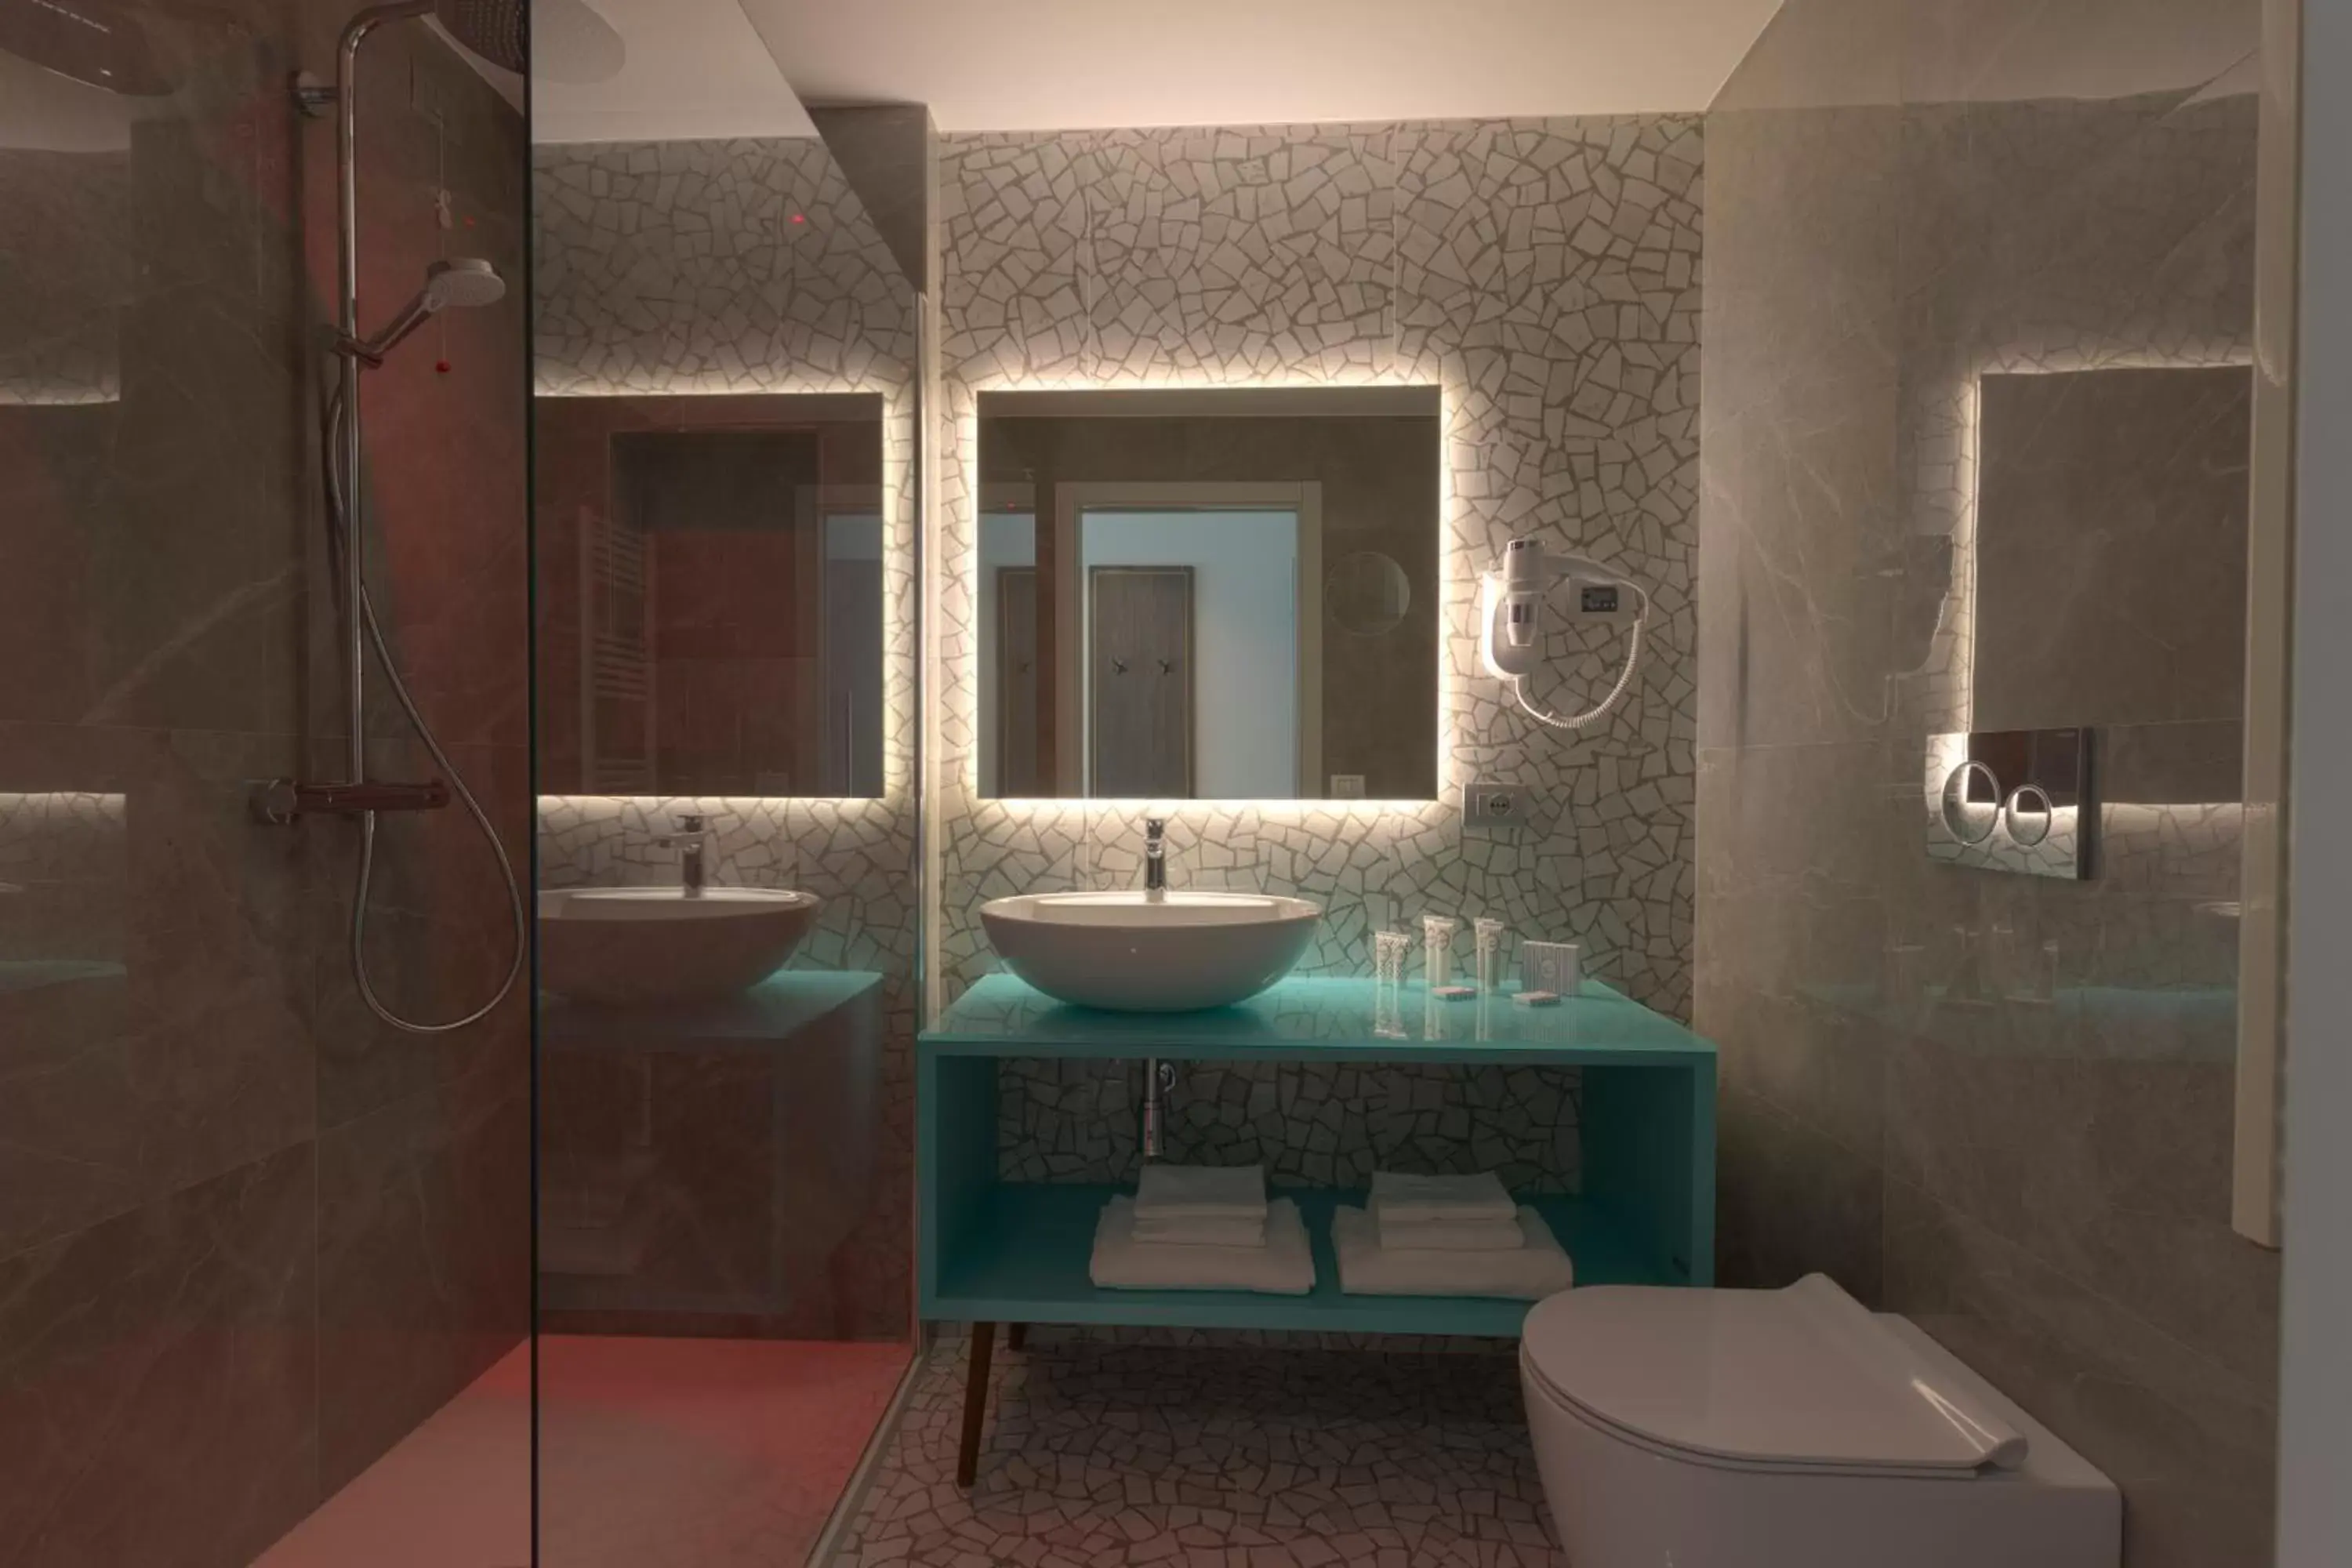 Shower, Bathroom in Ghibli Hotel